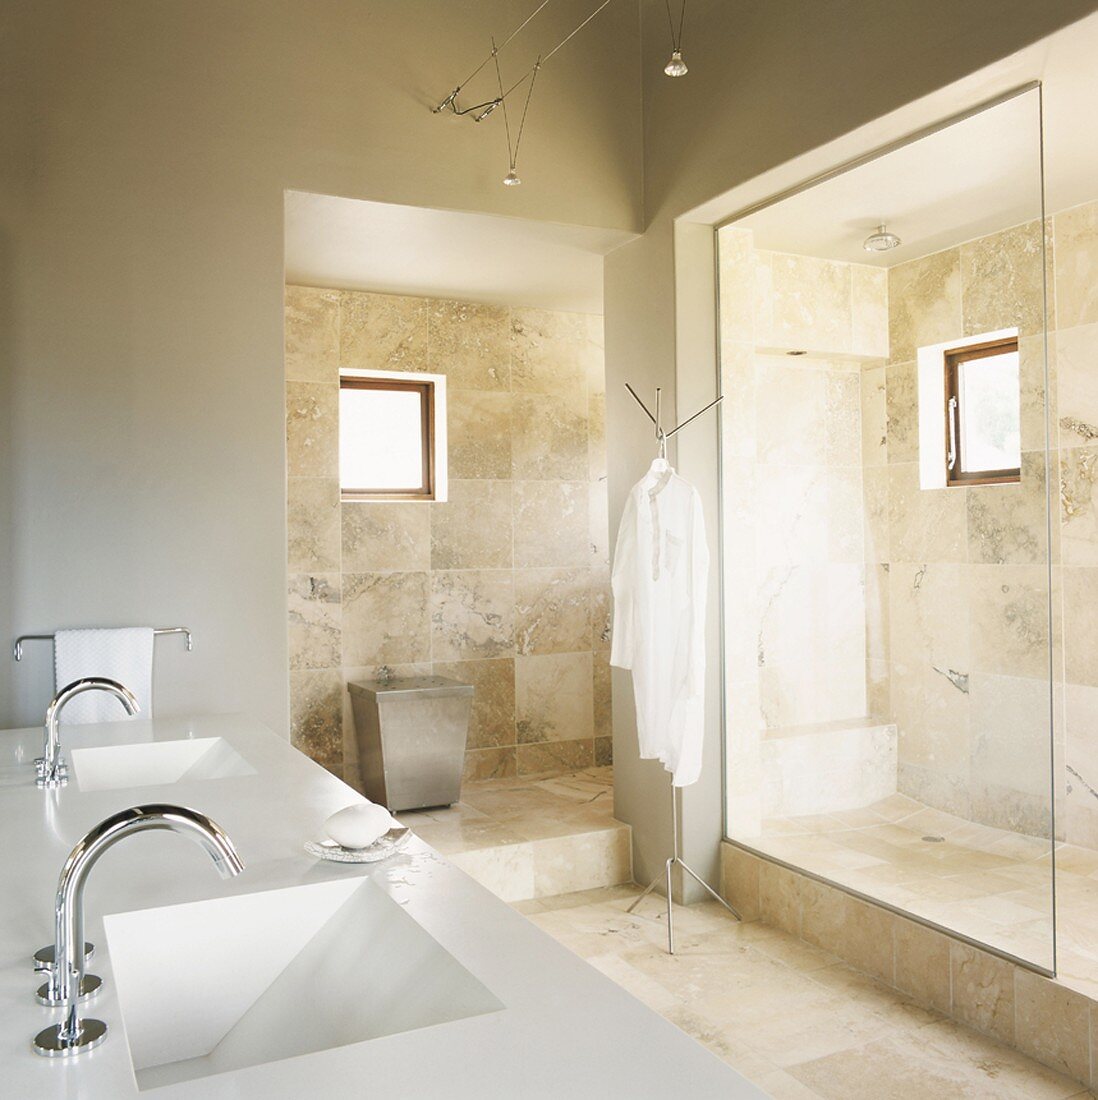 Designerbad in Natursteinoptik mit Nasszelle und Doppelwaschbecken sowie abgetrennter WC-Bereich